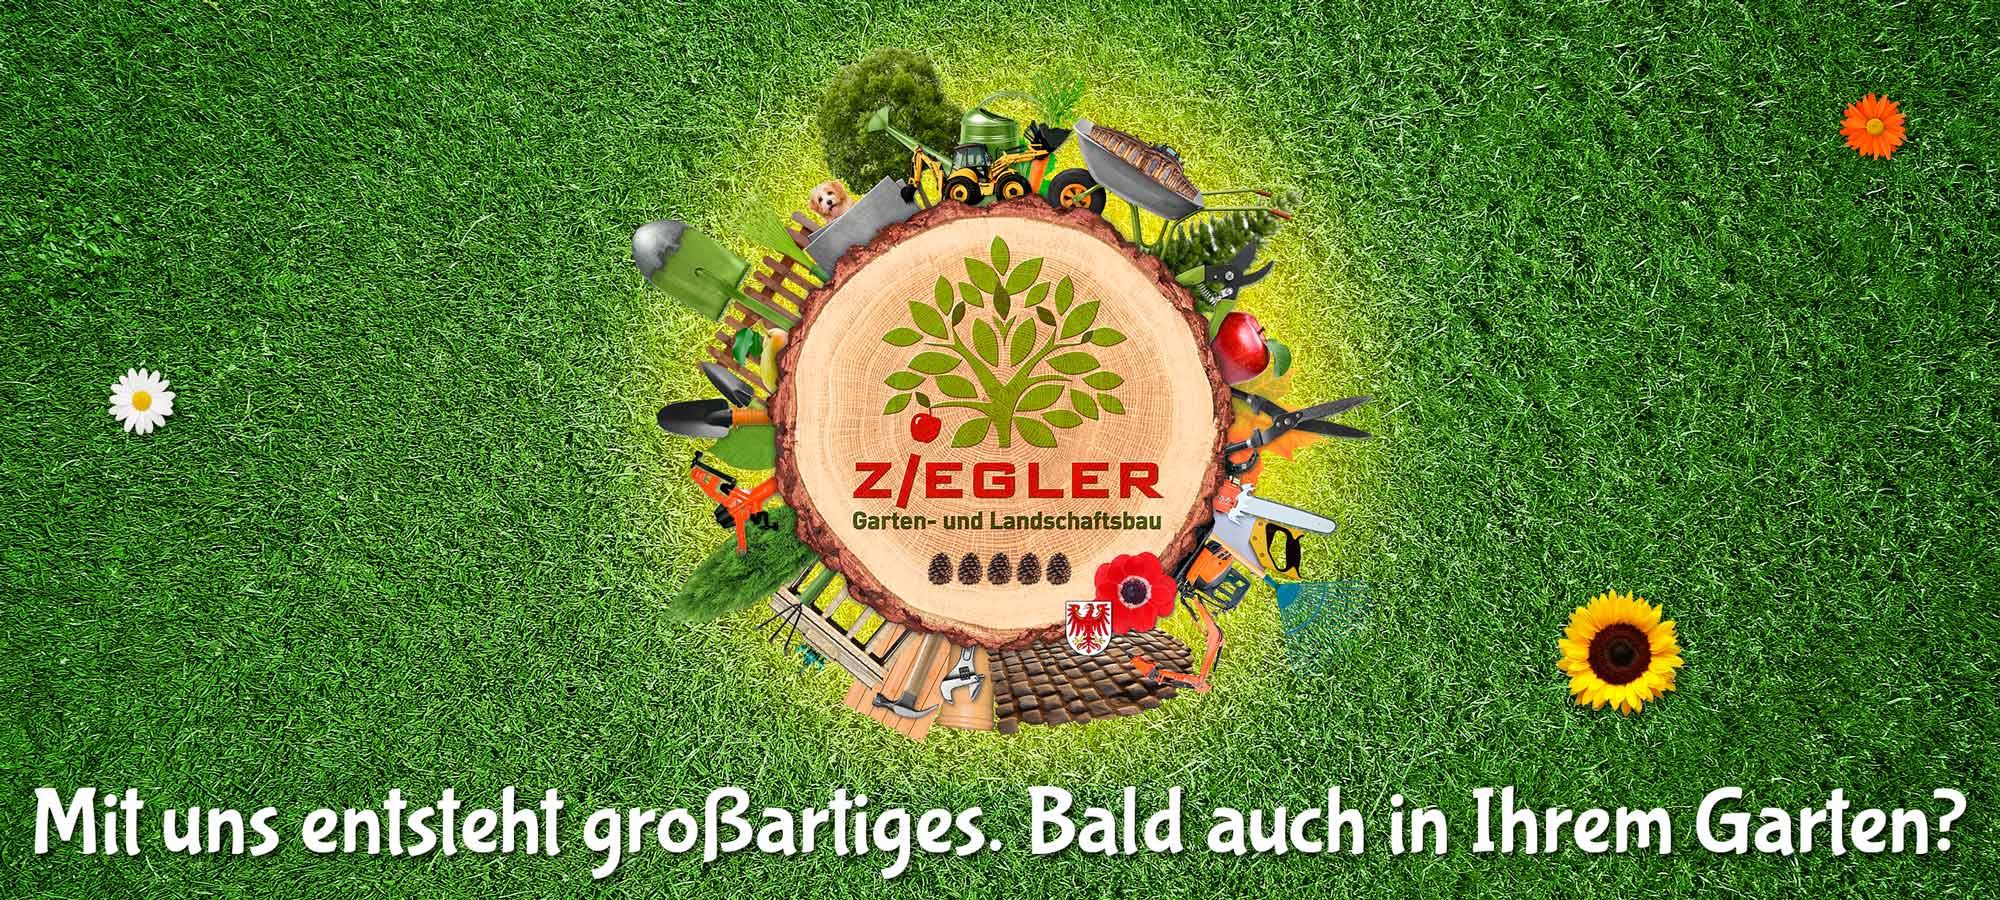 Gartenbau und Landschaftsbau (GaLaBau) Stefan Ziegler aus Nuthetal, Saarmund, Bergholz-Rehbrücke und Michendorf